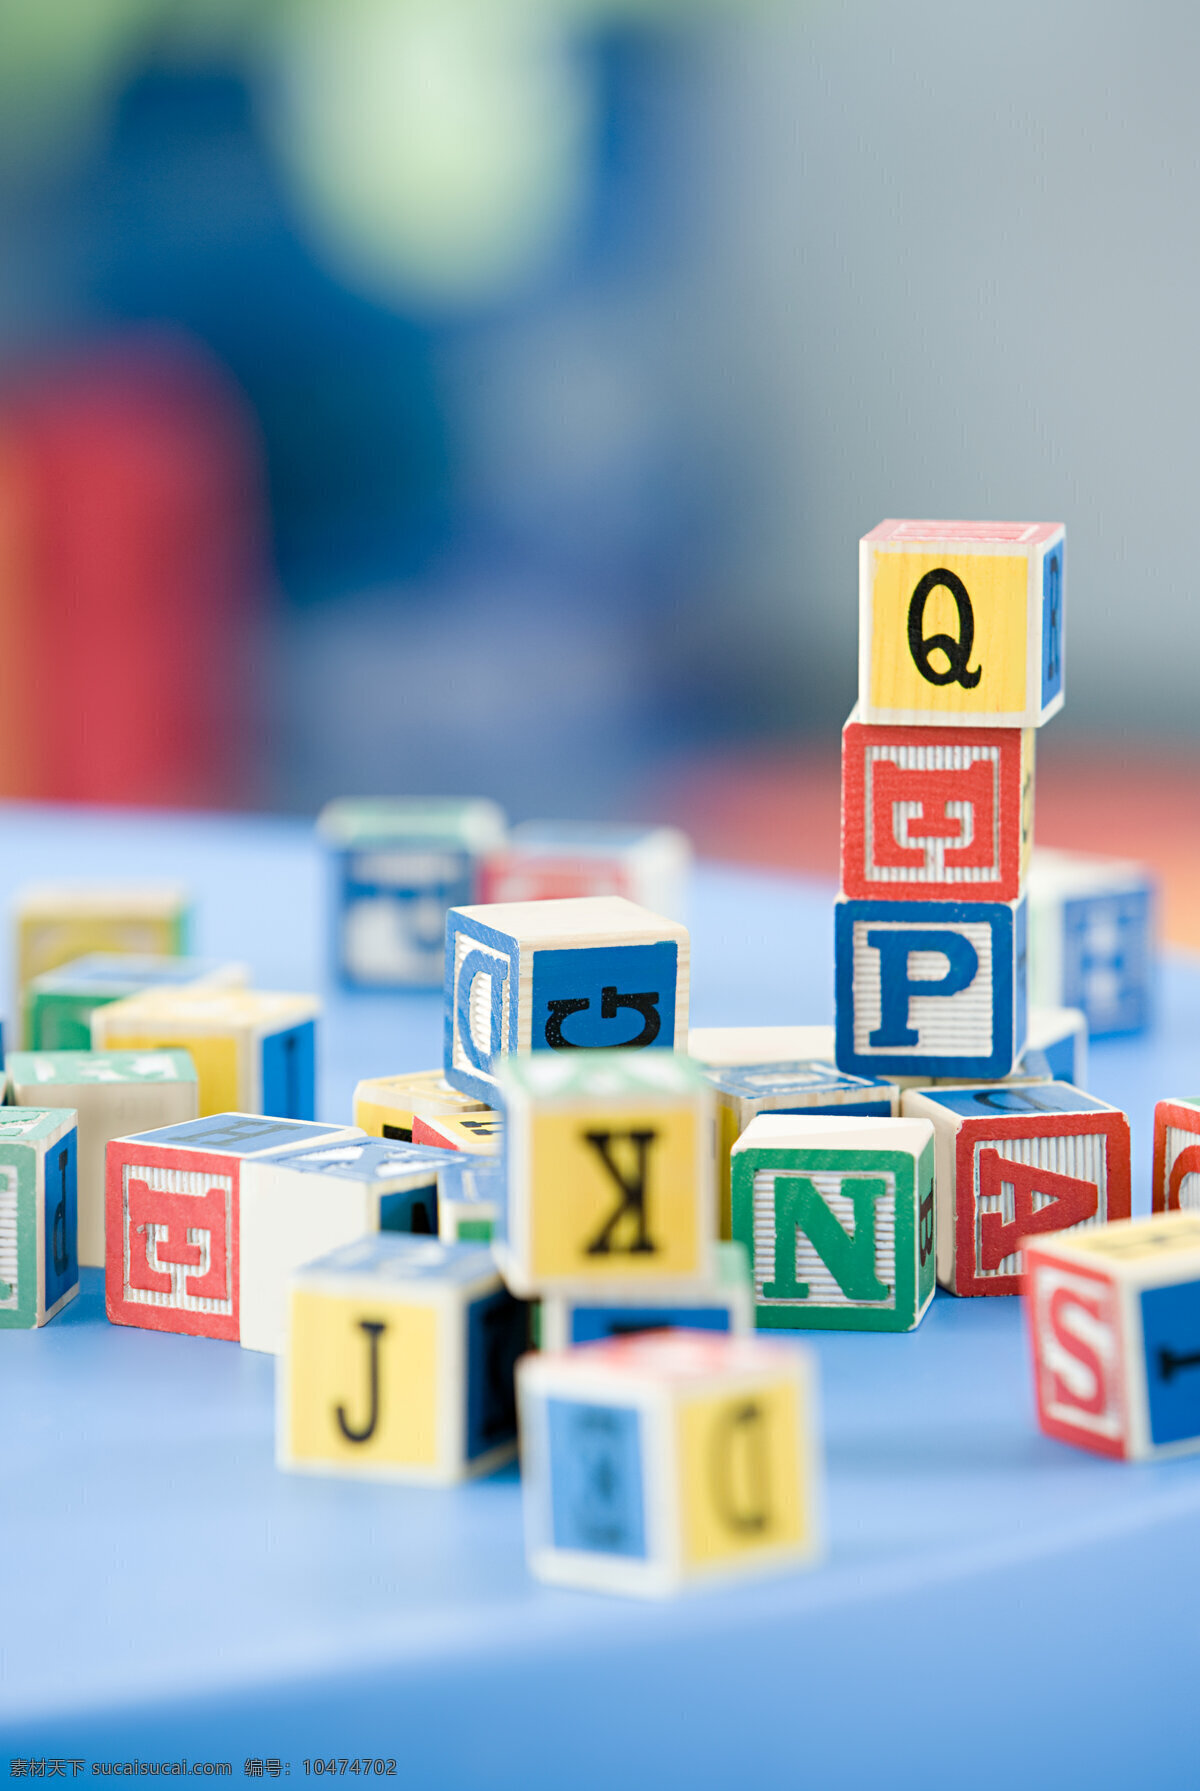 字母 积木 幼儿园 玩具 英文字母 拼音 方形 正方体 五颜六色 多彩 高清图片 儿童图片 人物图片